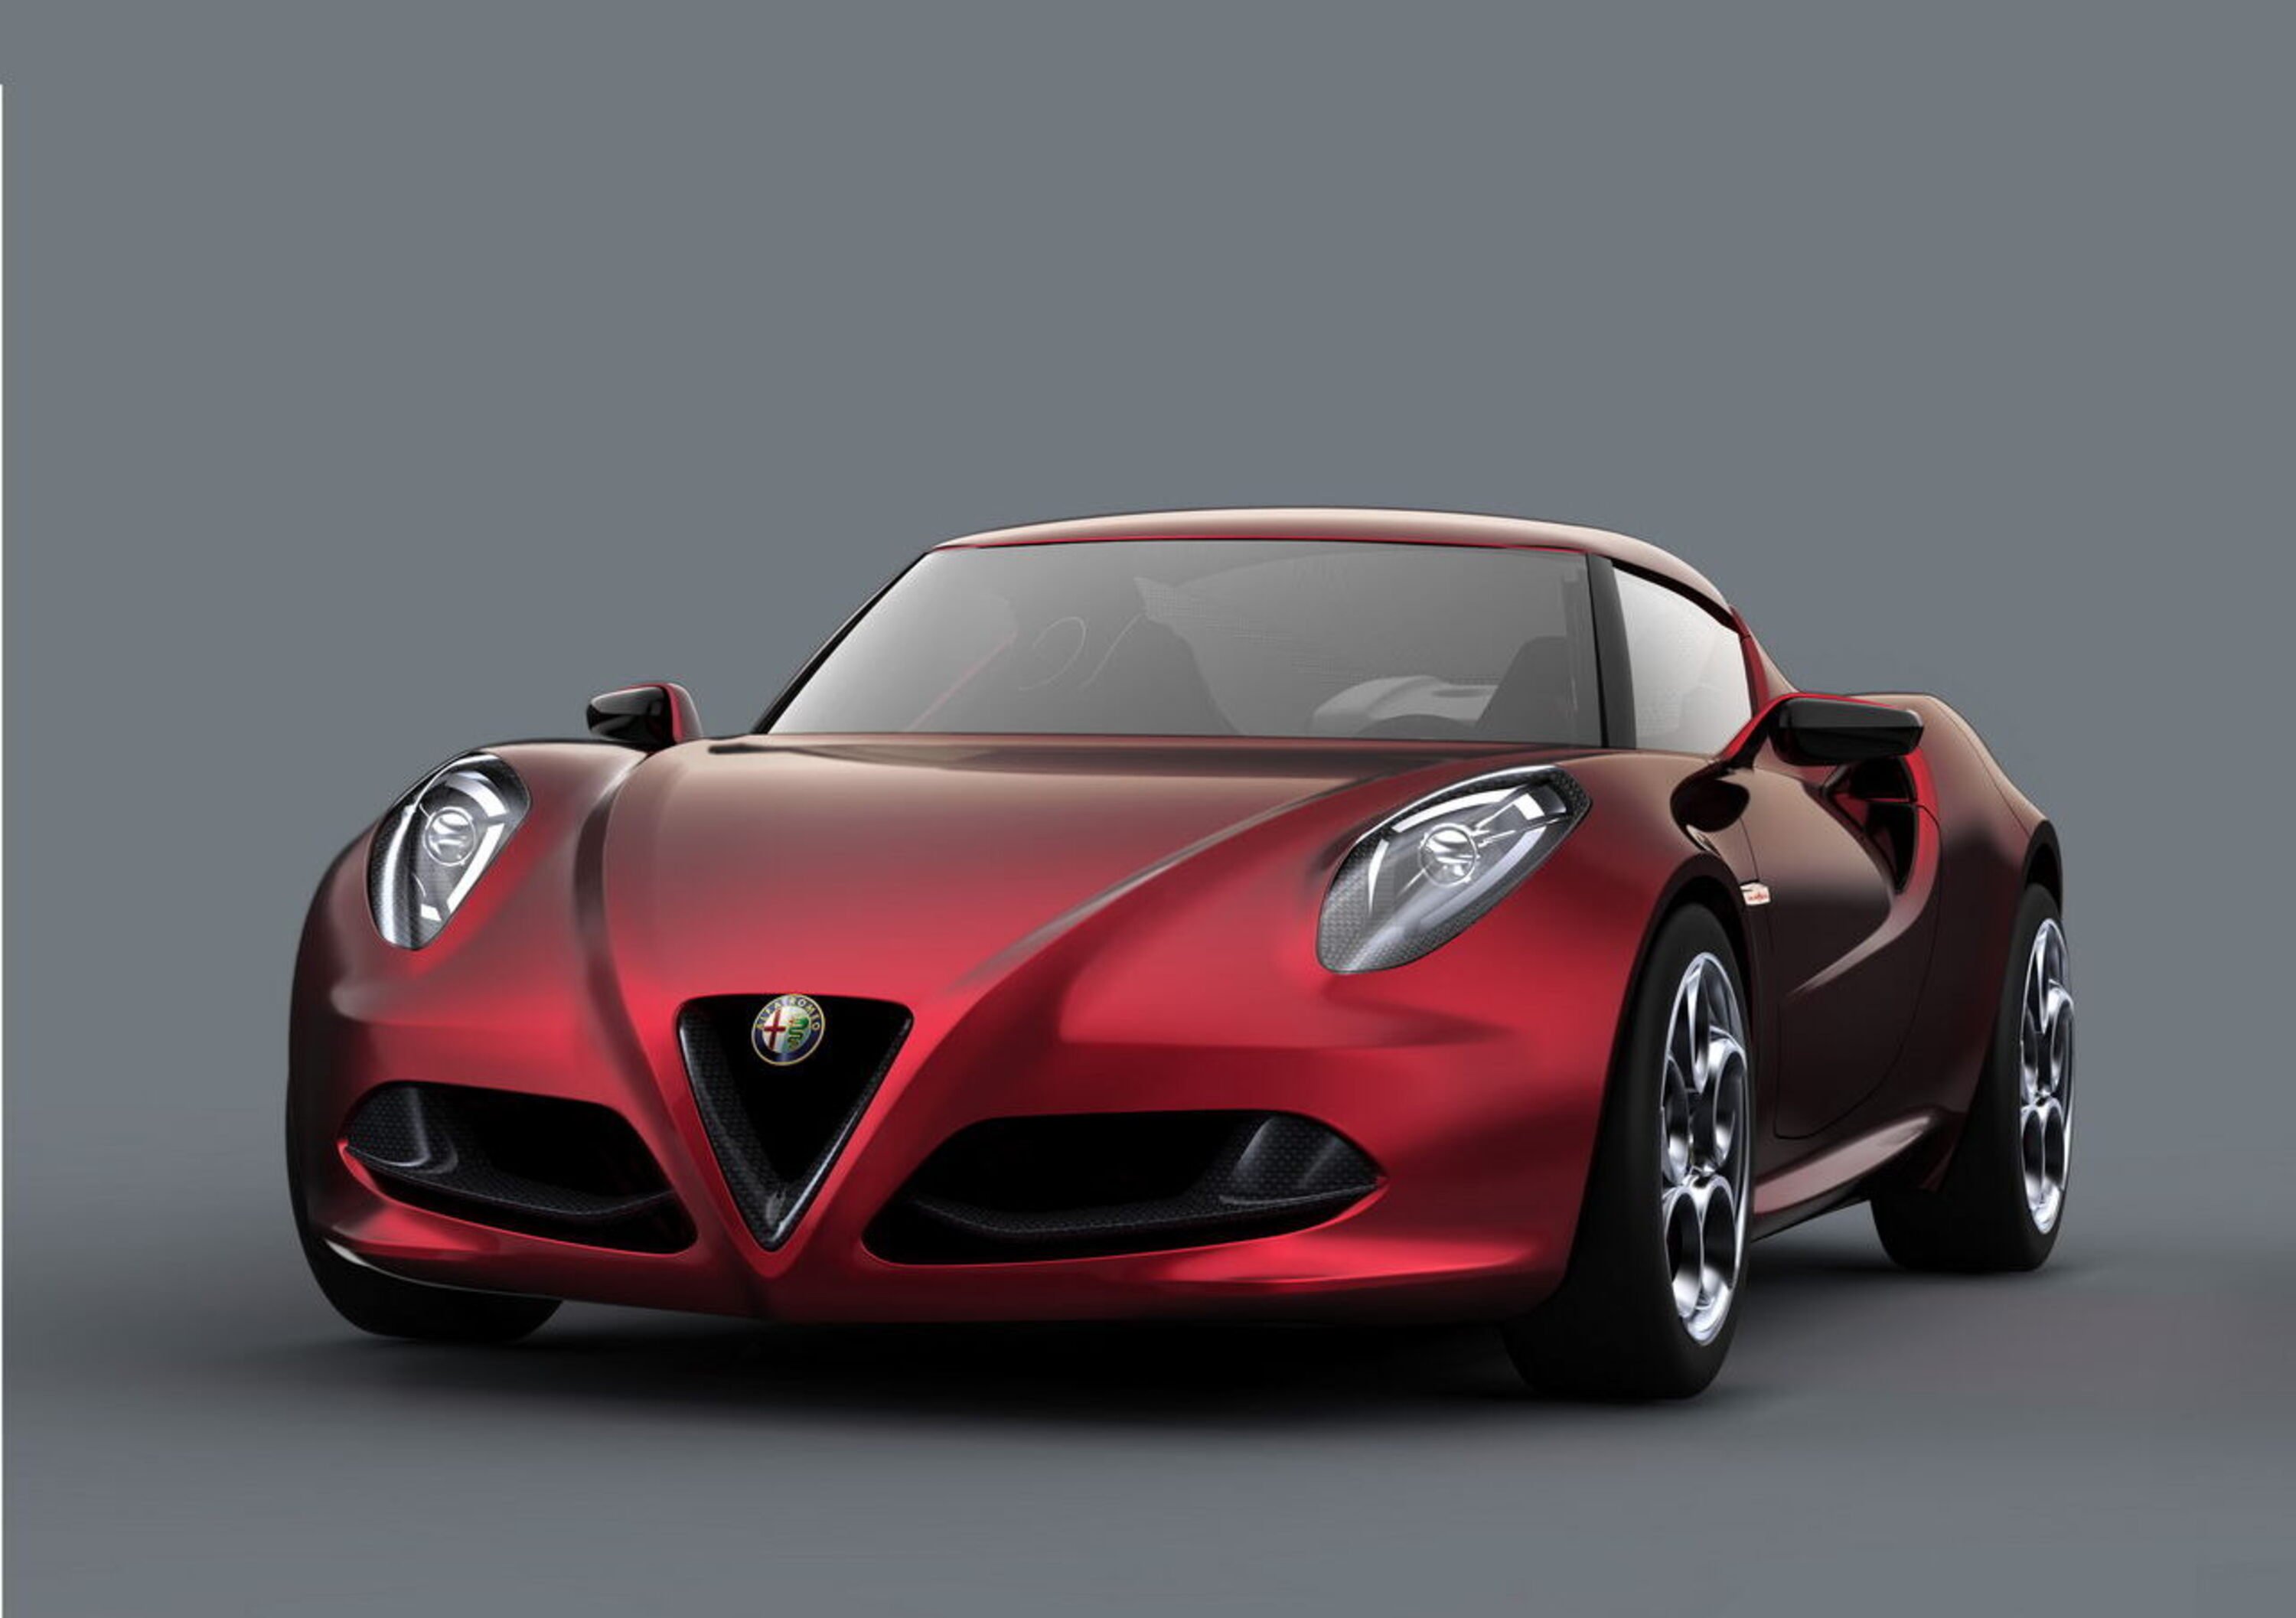 Marchionne: &laquo;L&rsquo;Alfa Romeo torner&agrave; negli USA nel 2013 con la 4C&raquo;